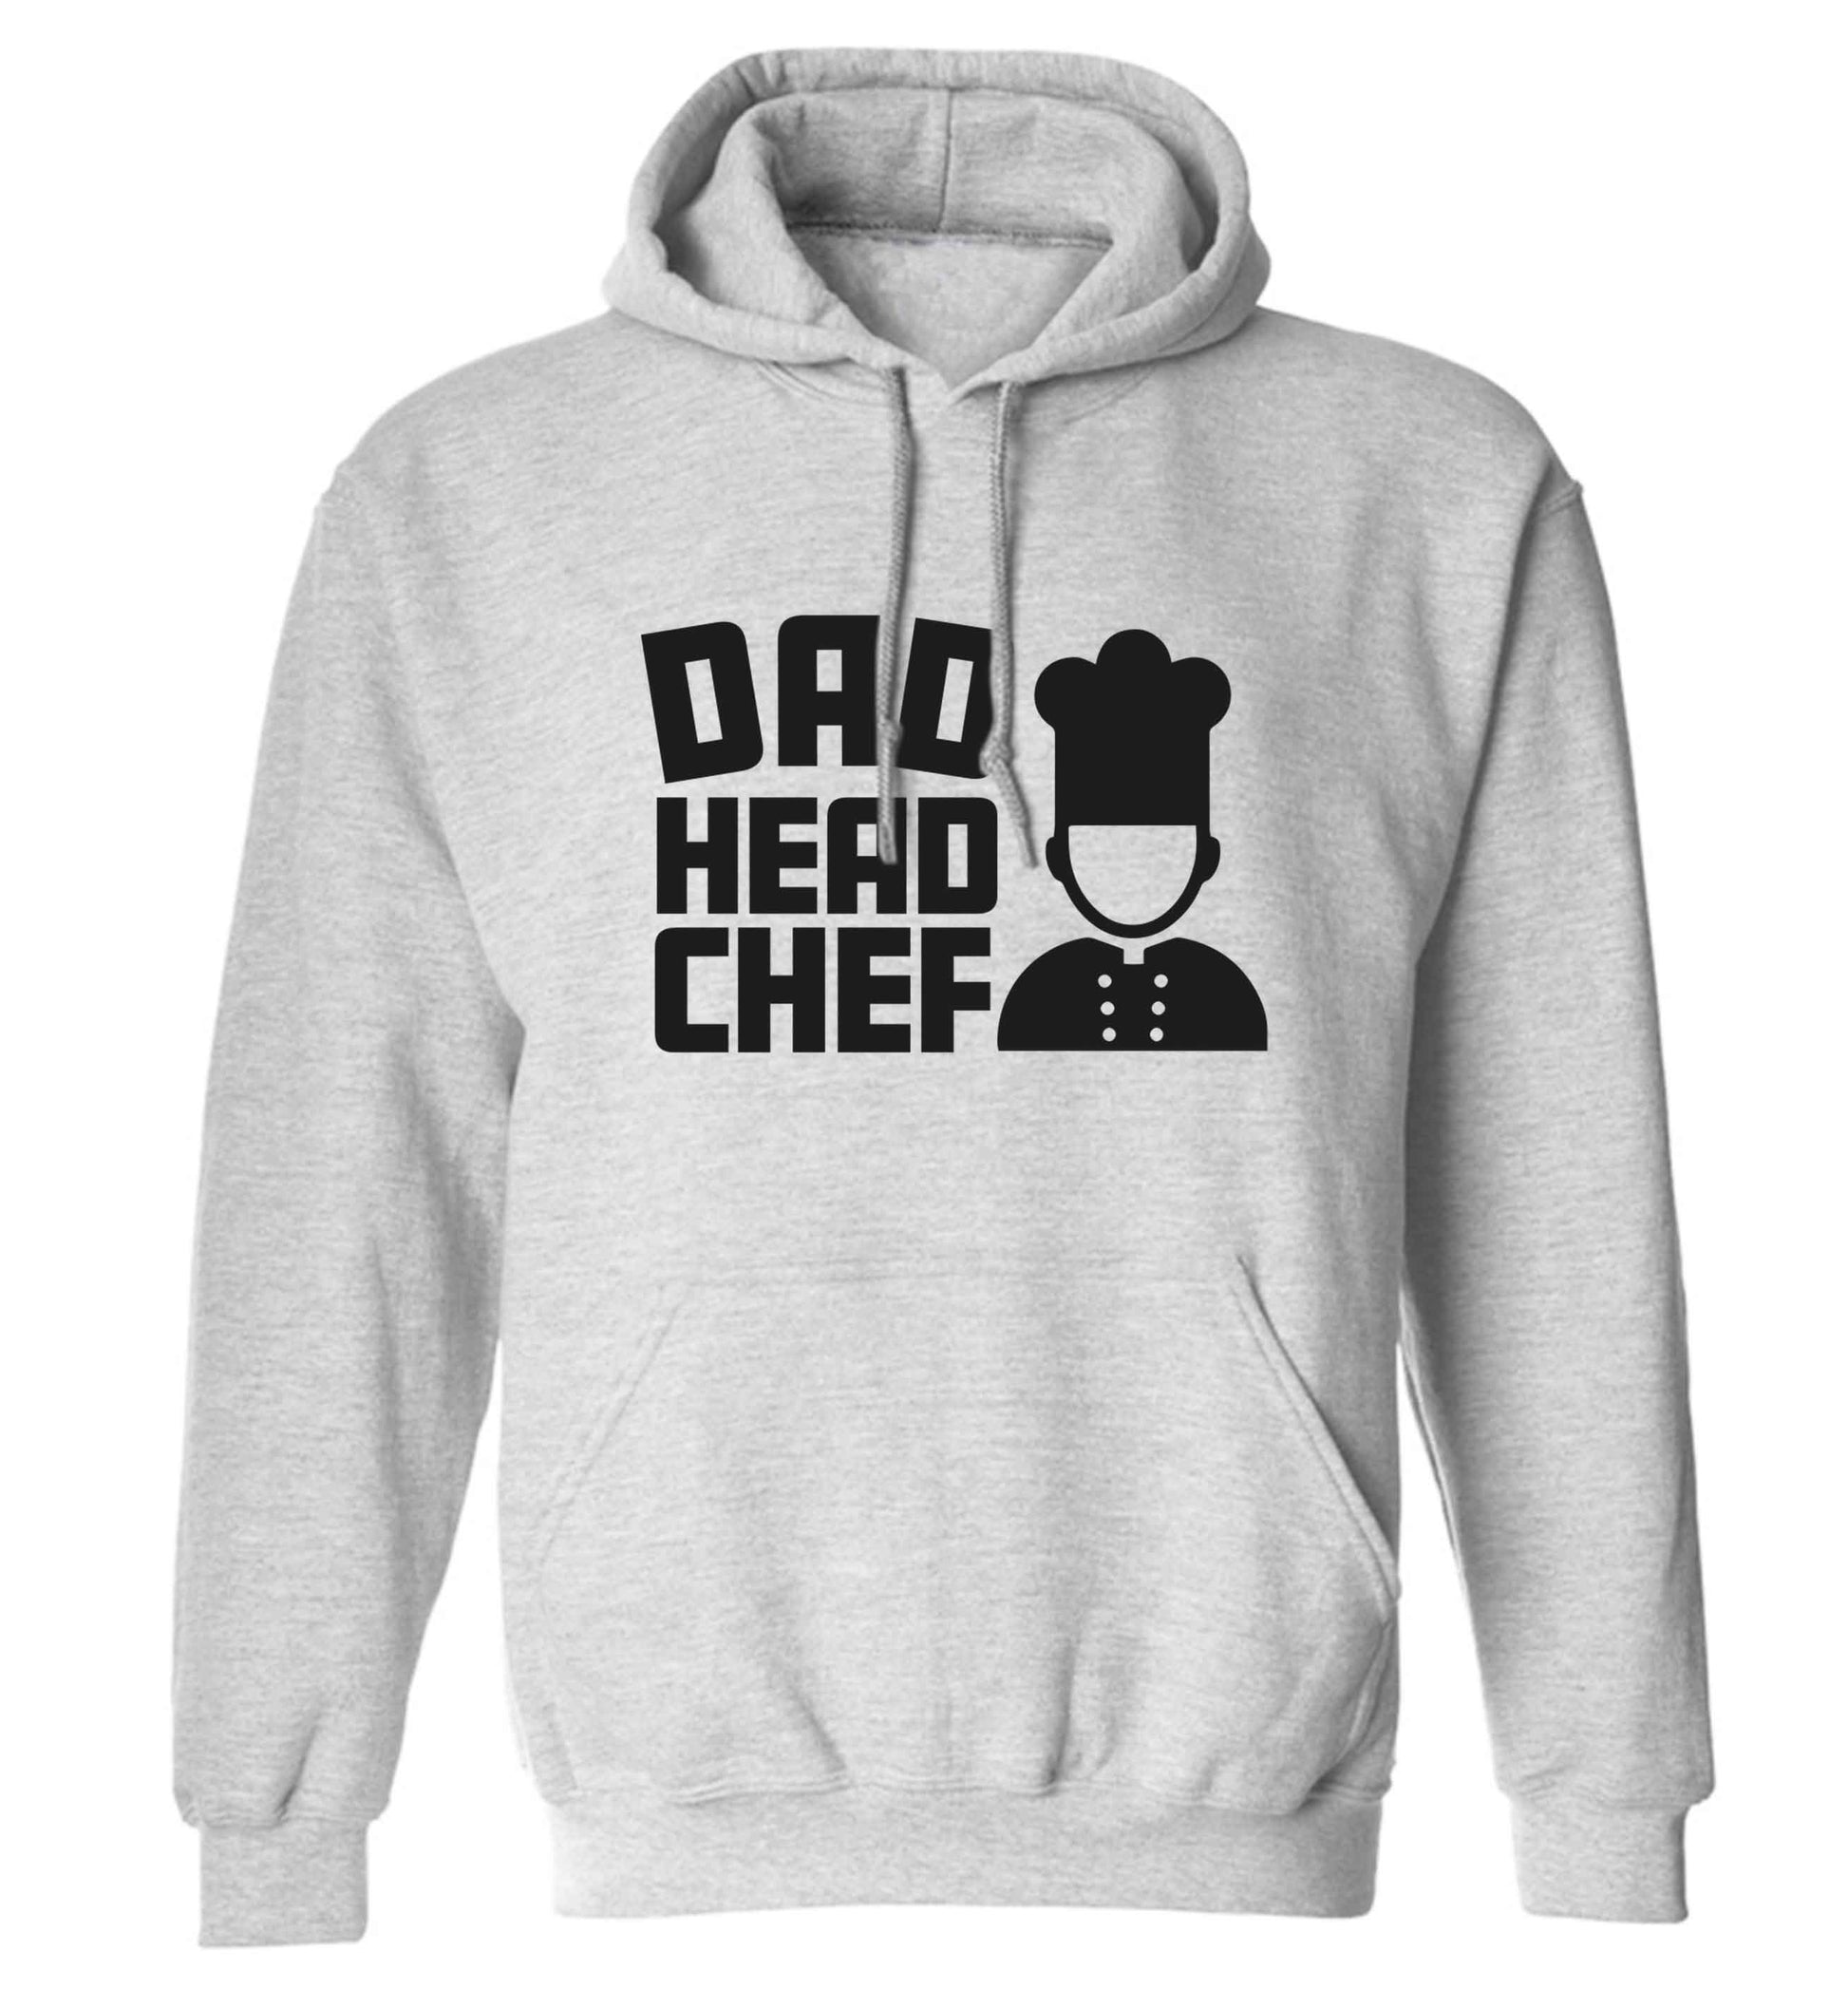 Dad head chef adults unisex grey hoodie 2XL